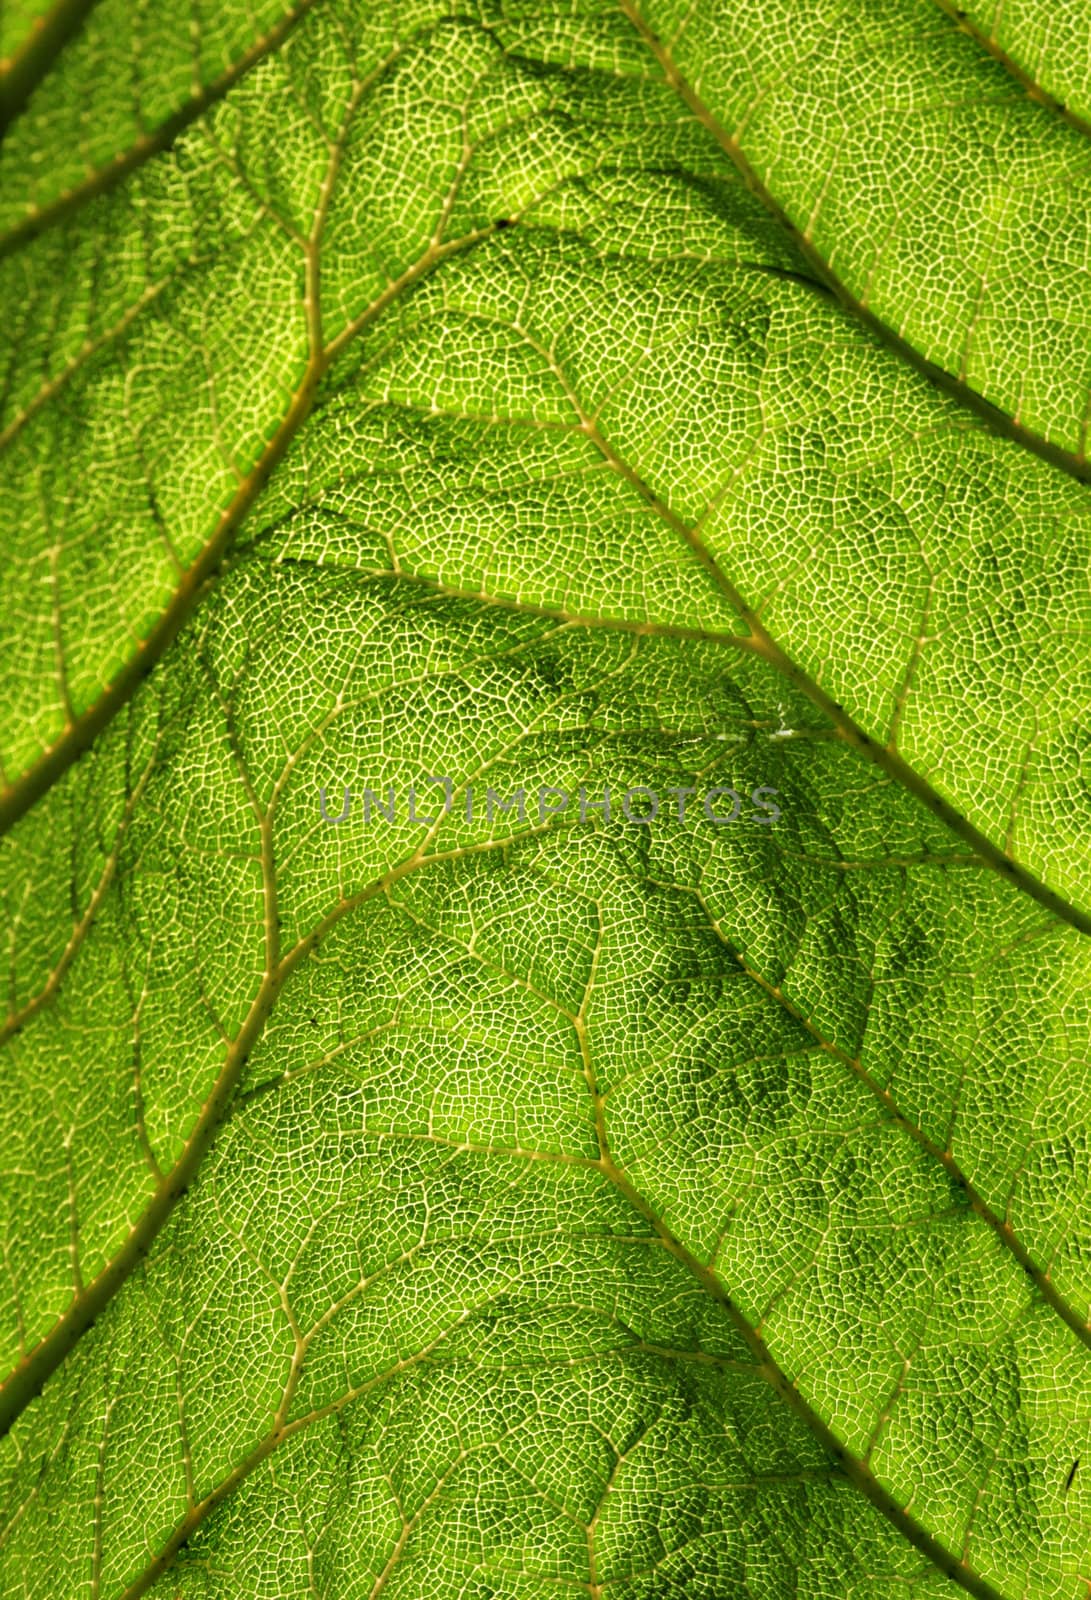 Green fresh leaf with backlightning